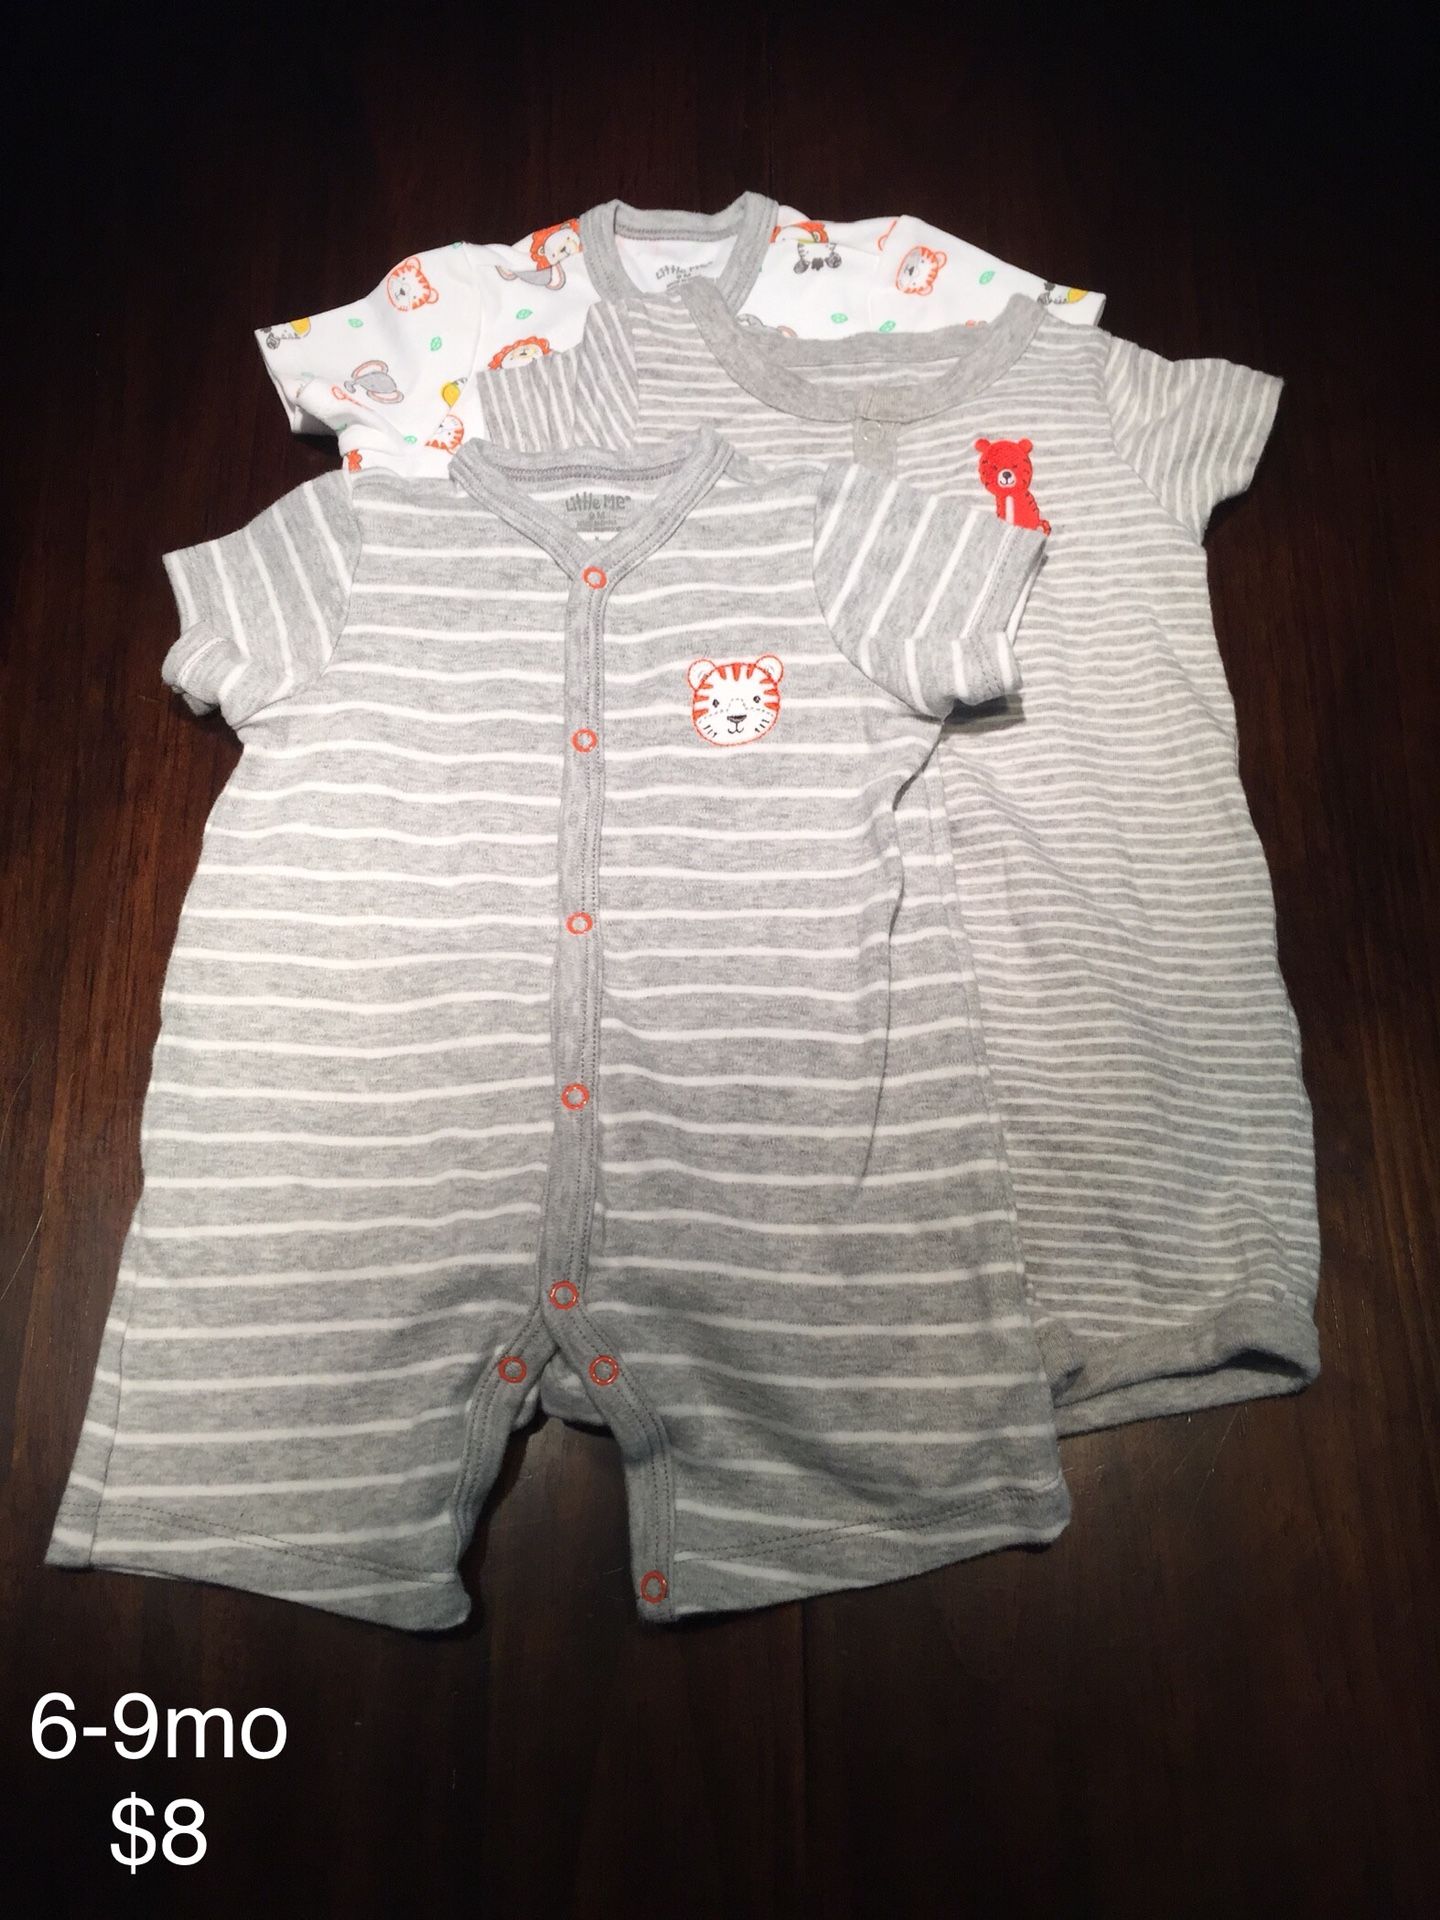 6-9mo Baby Boy Clothing